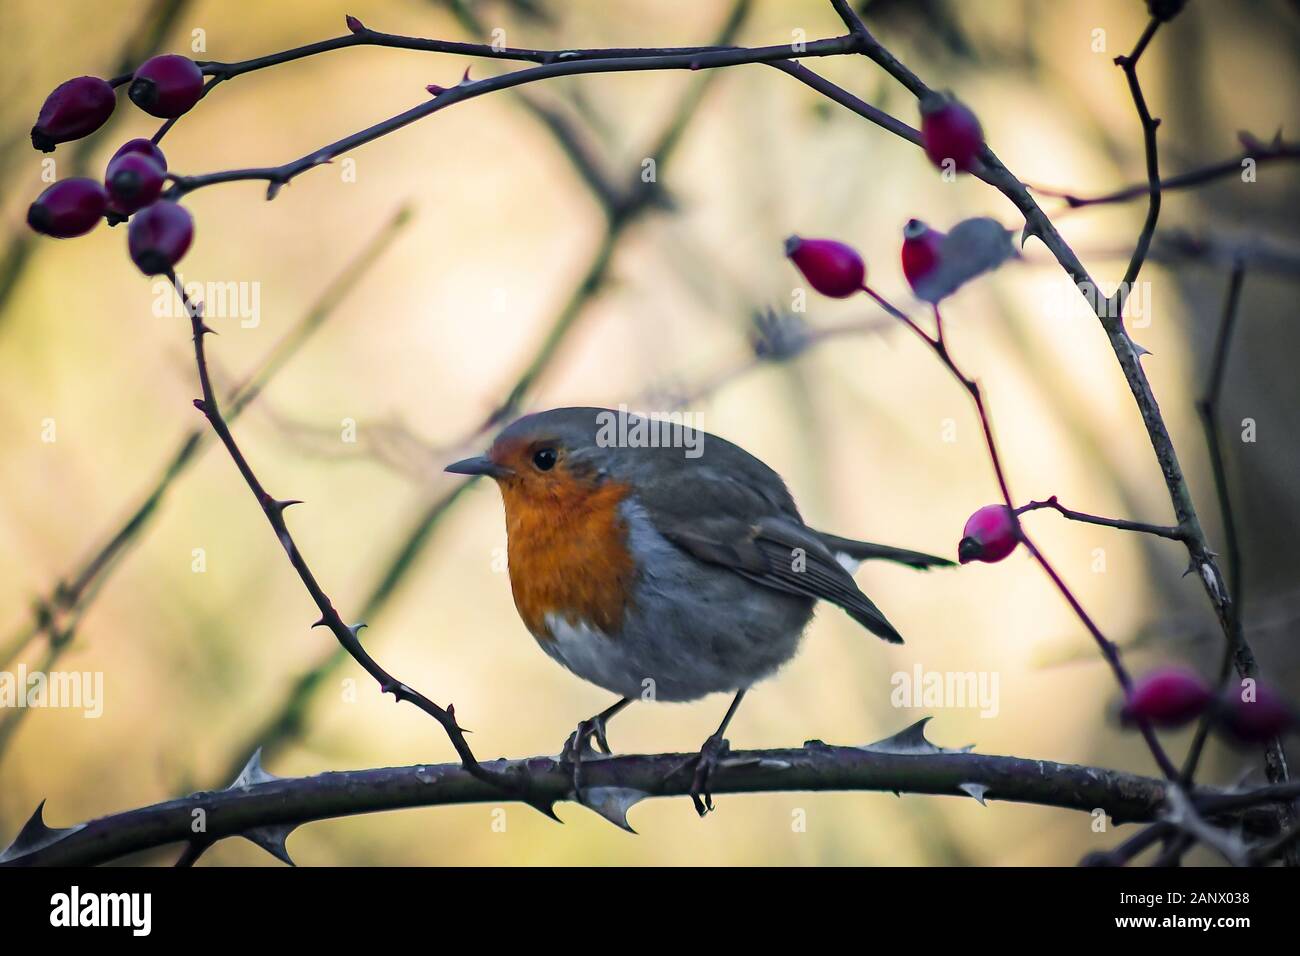 Un Robin sentado en una rama con bayas rojas en el fondo podría estar buscando comida o simplemente posando para una foto Foto de stock